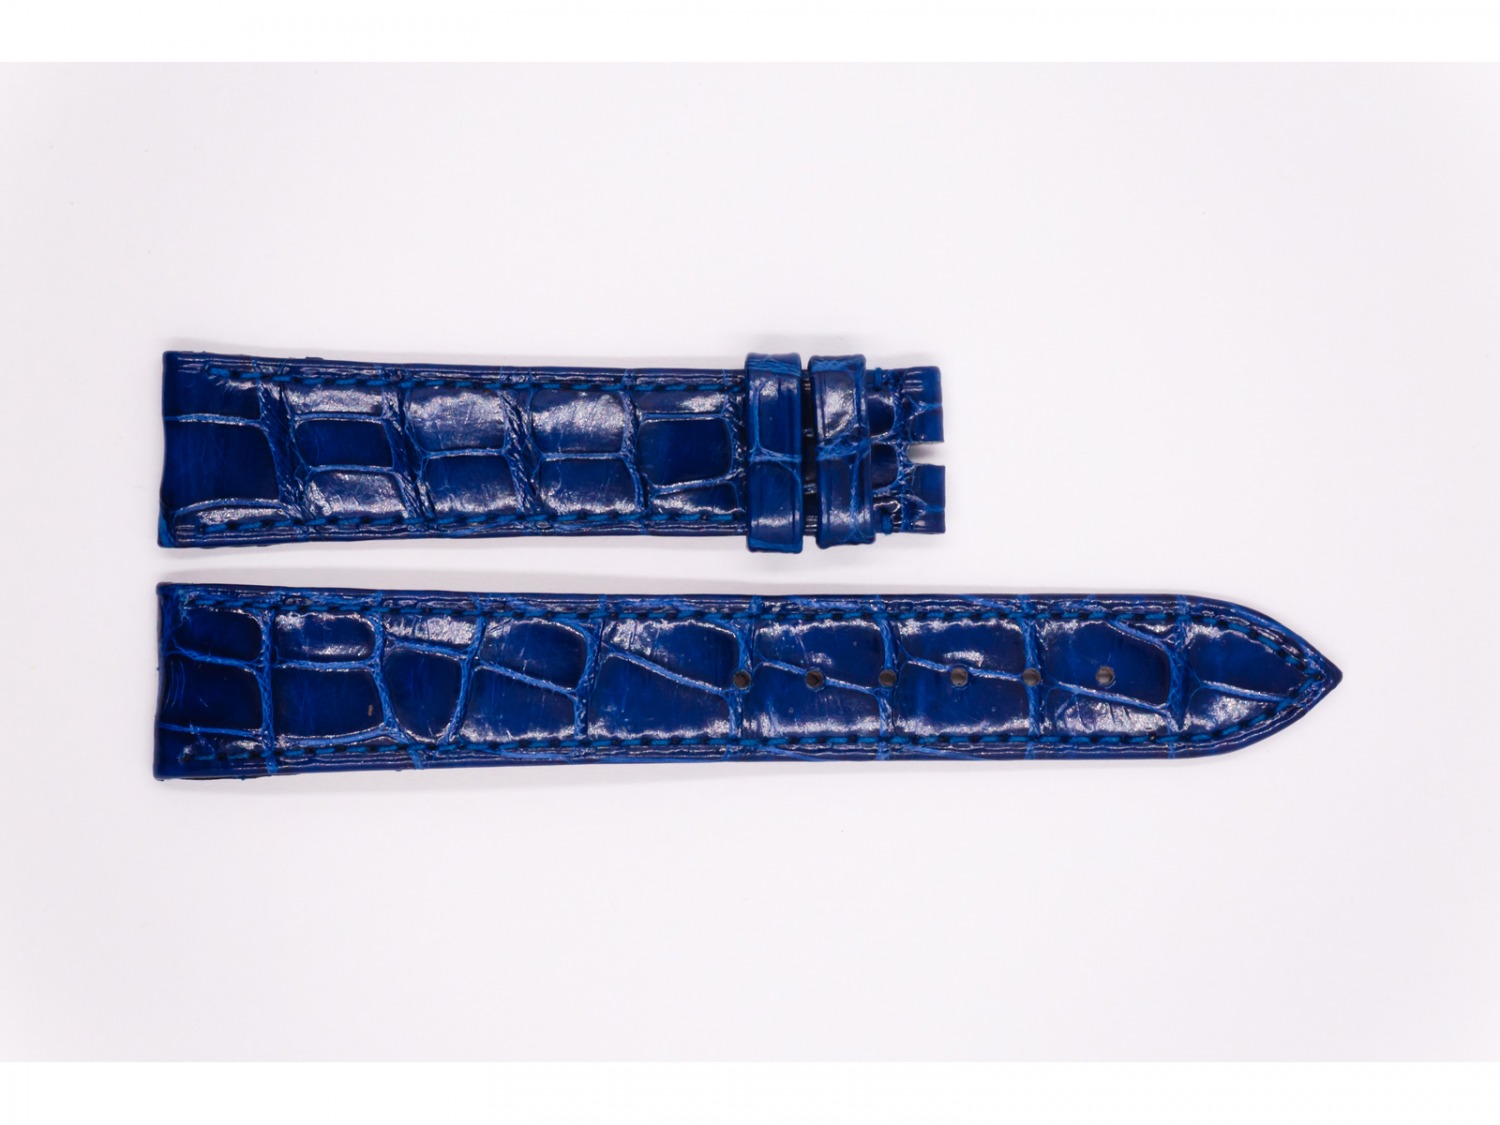 Leather Ulysse Nardin Strap, glossy blue